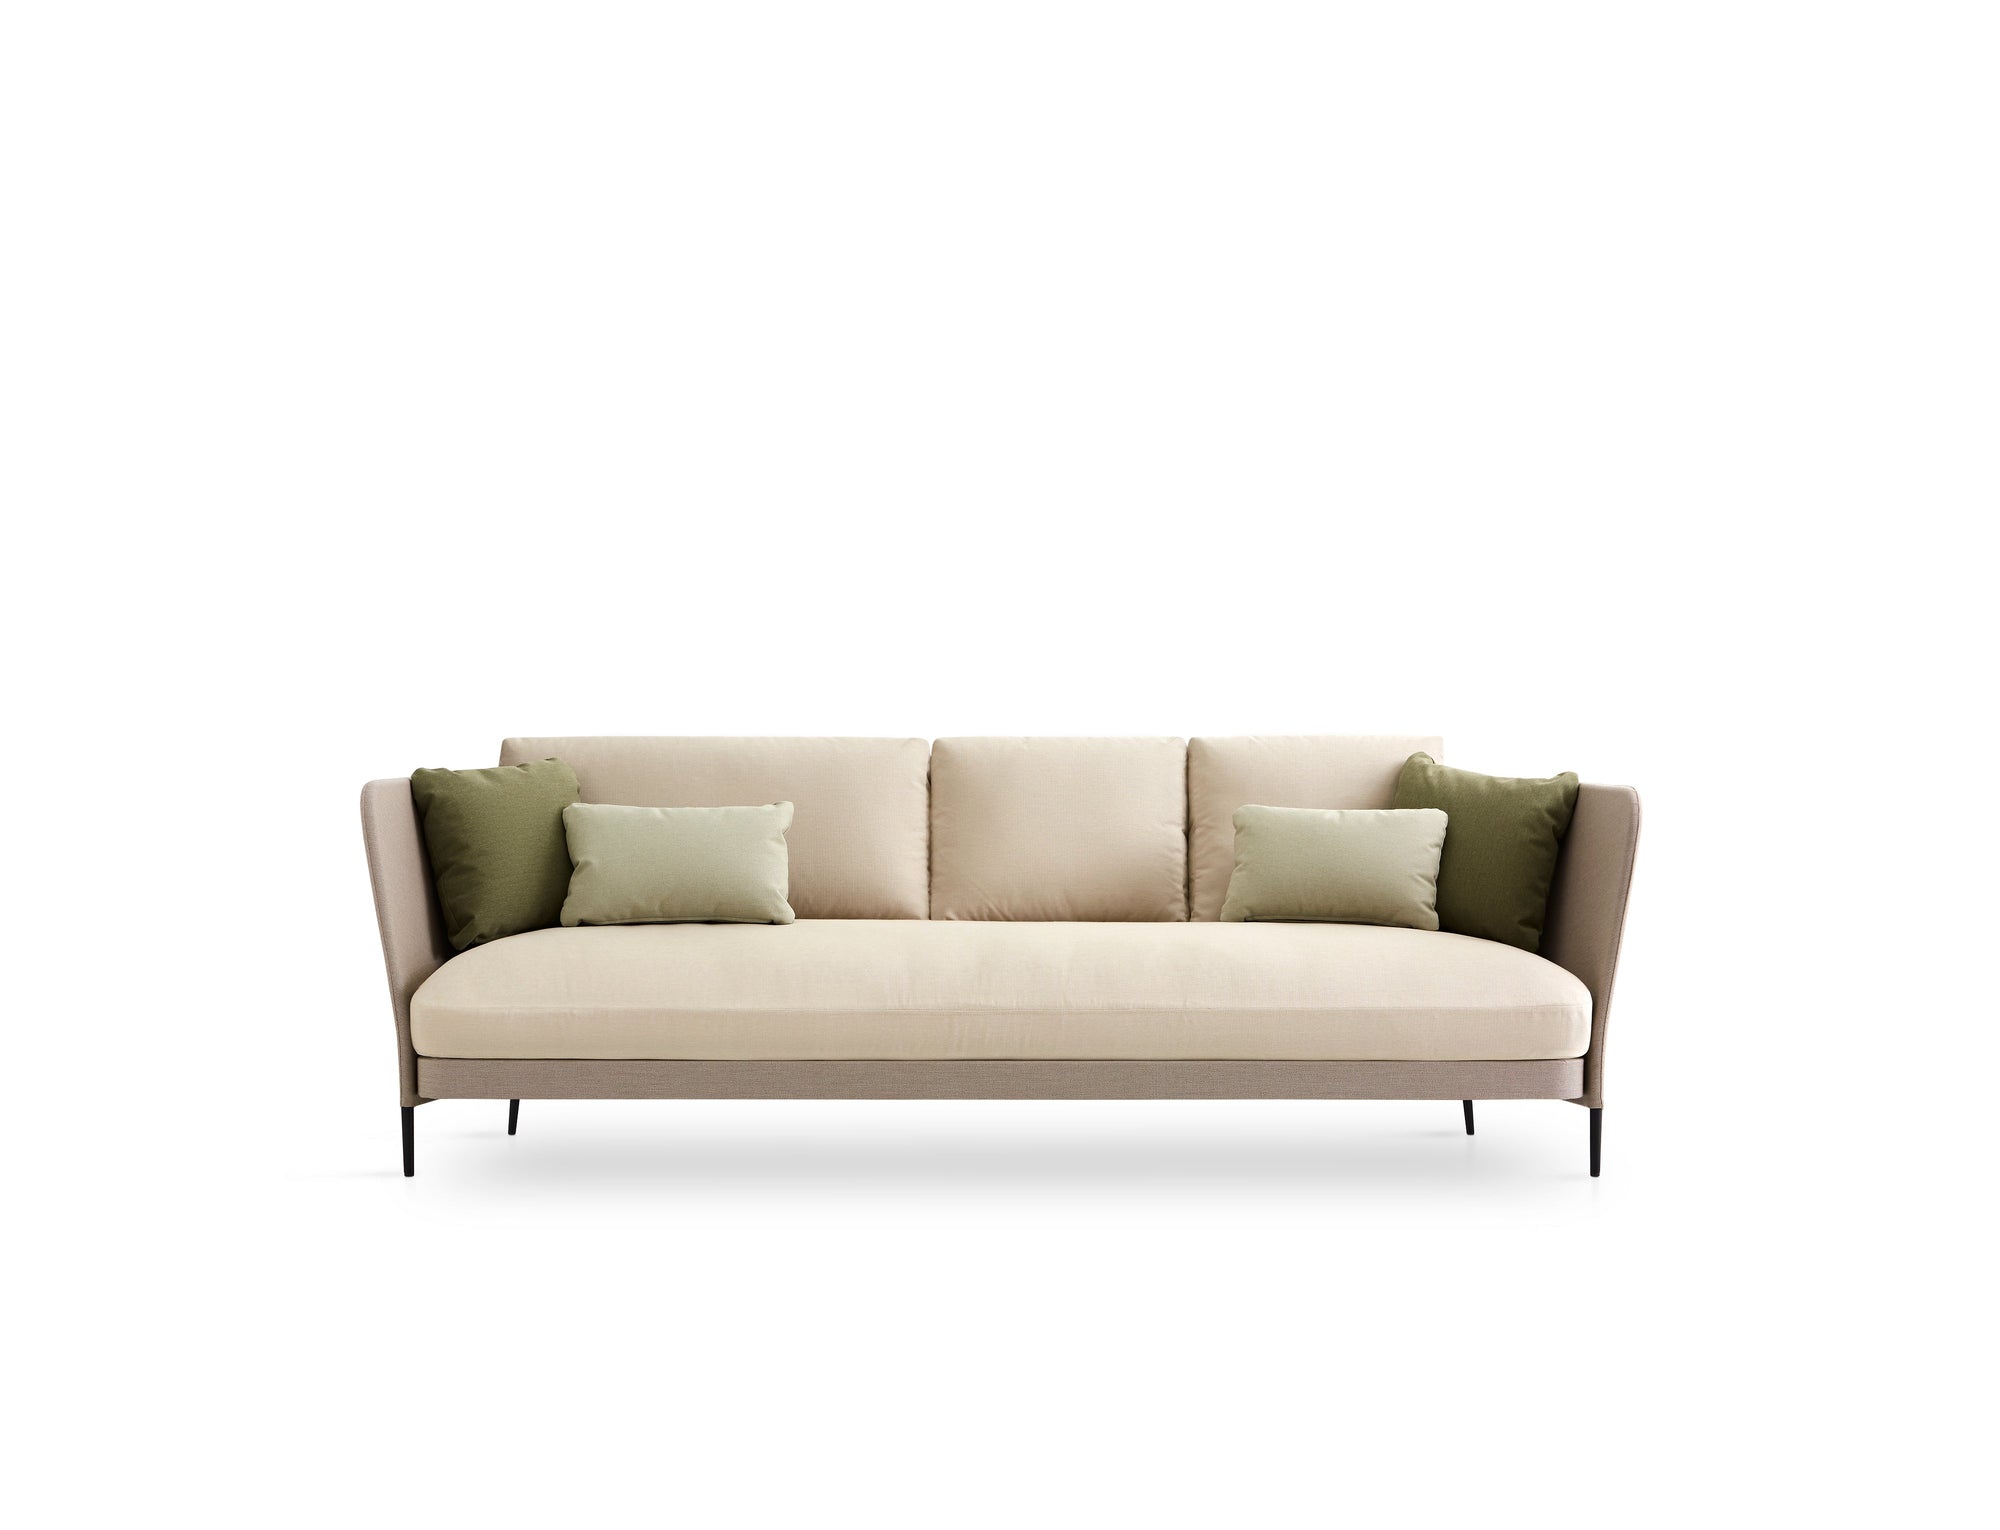 Käbu Sofa-Expormim-Contract Furniture Store